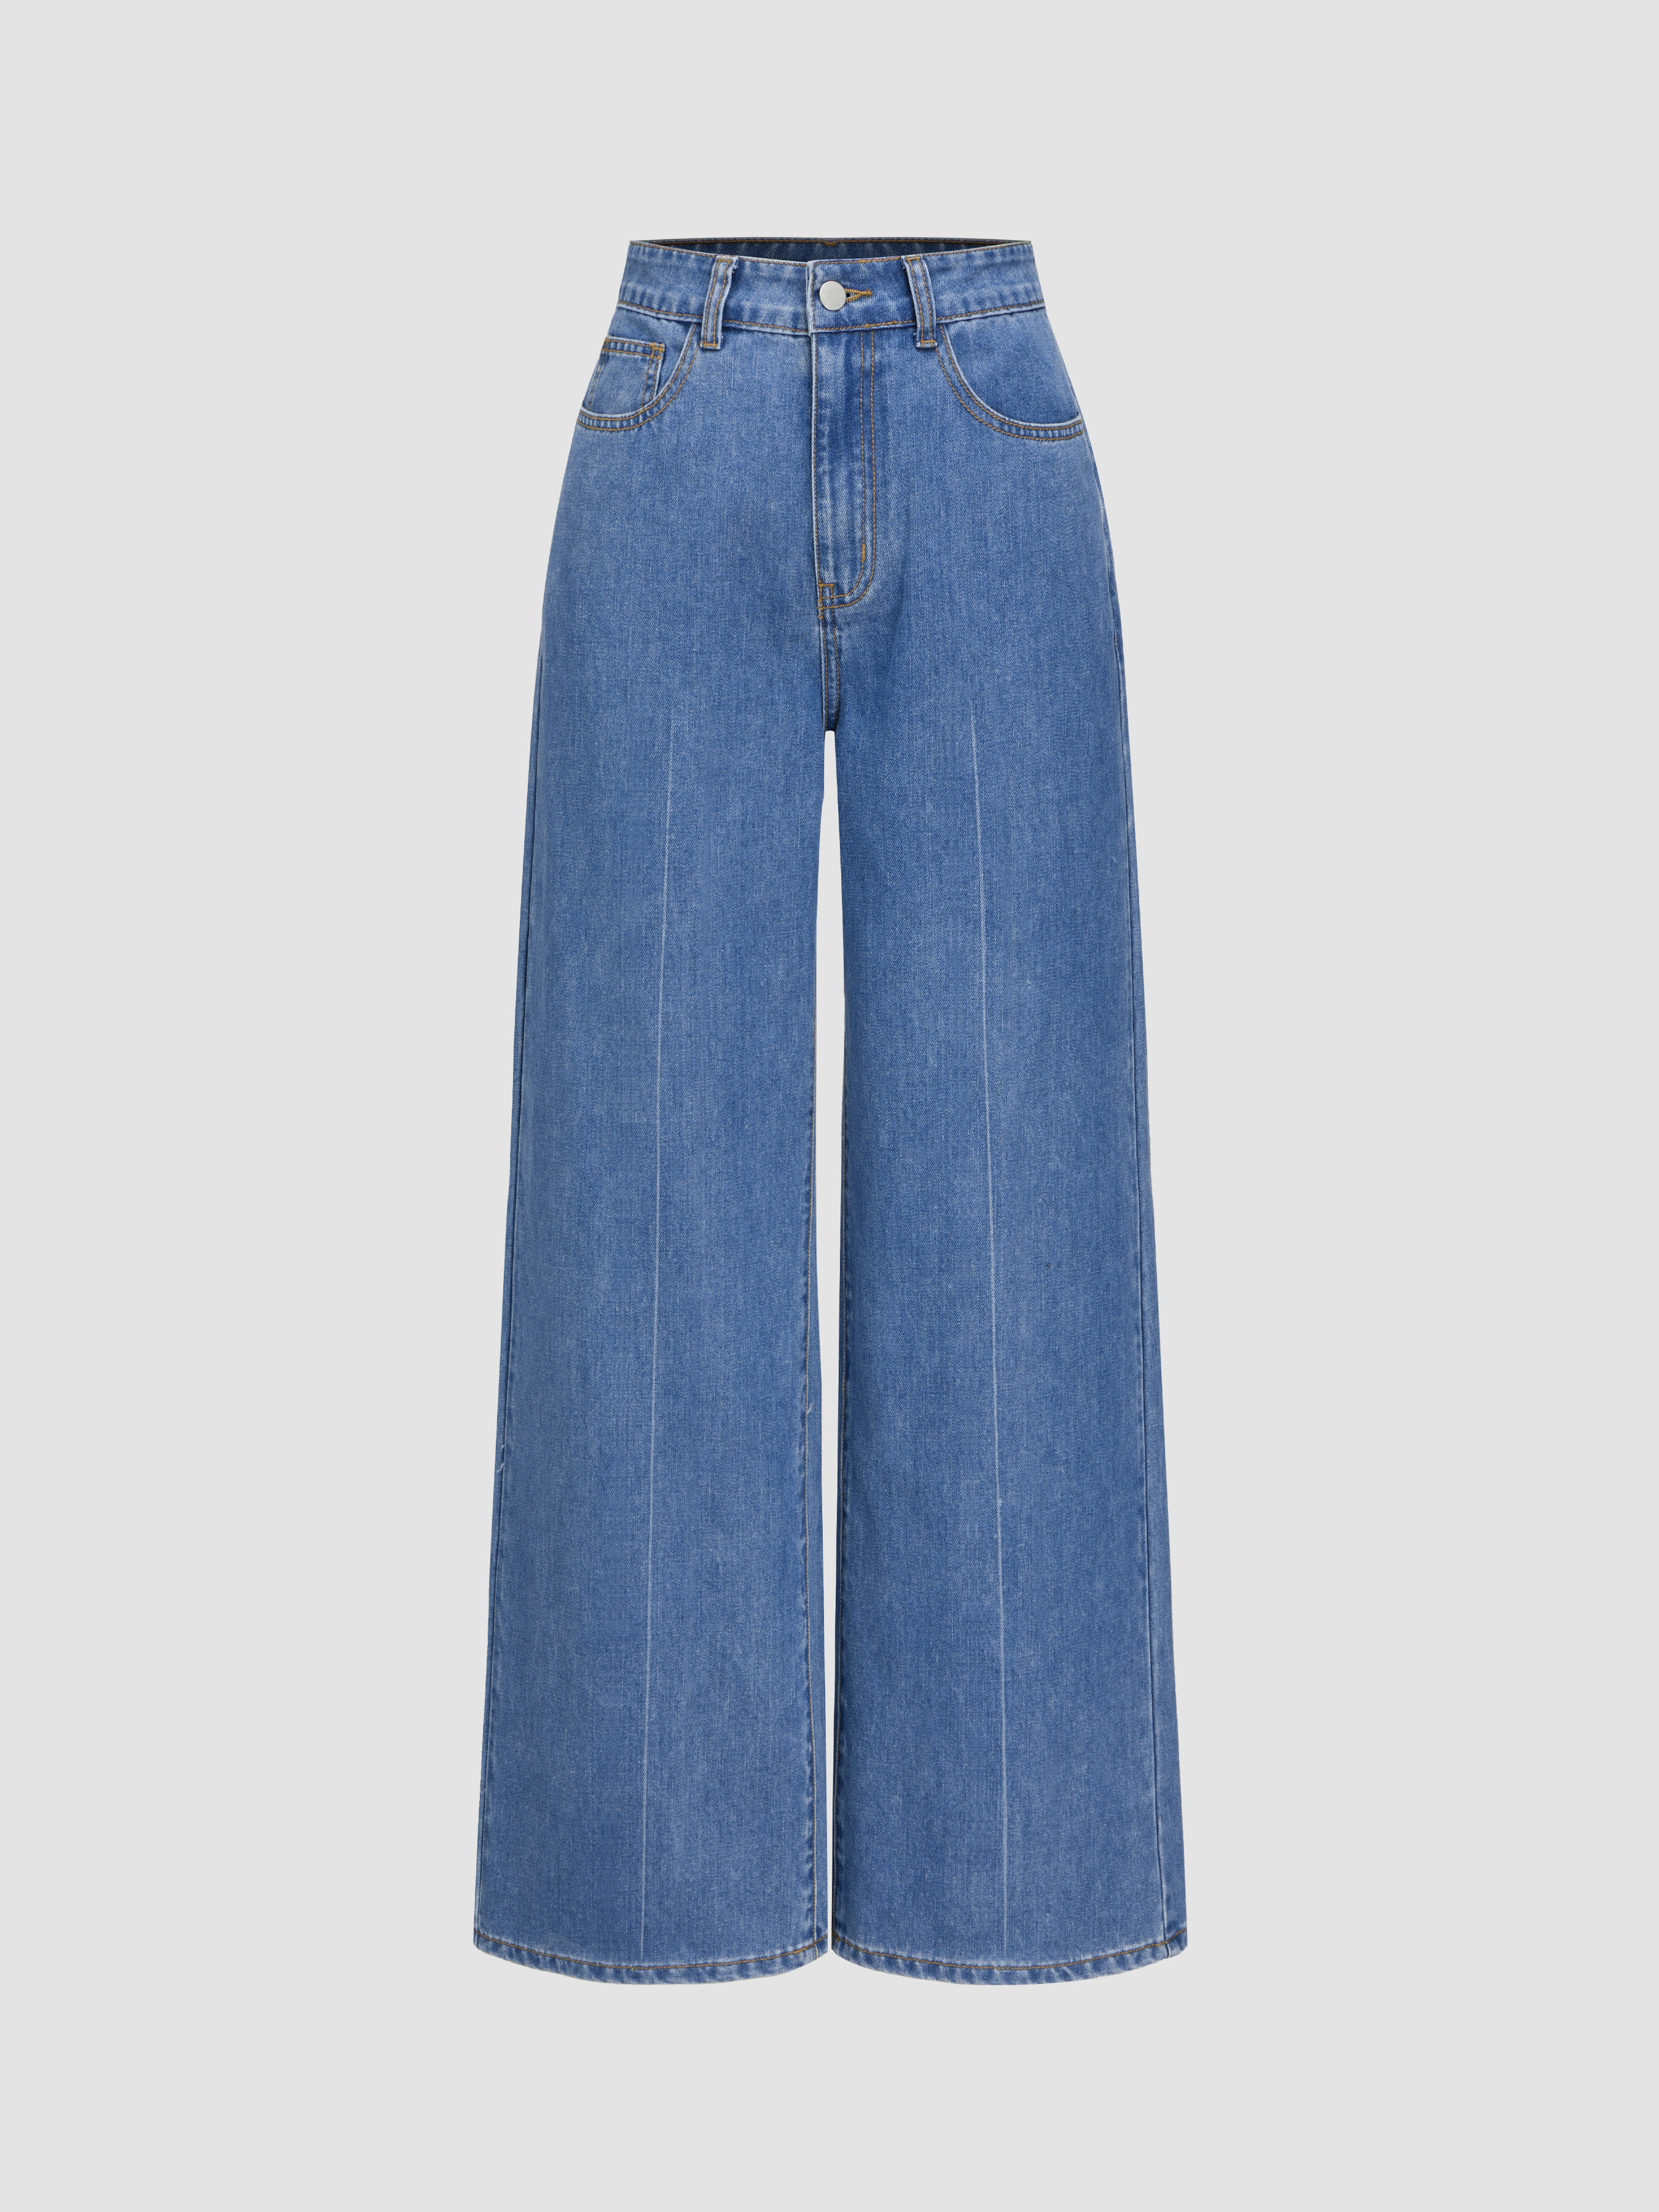 Jeans feminino de algodão solto cintura alta perna larga jeans